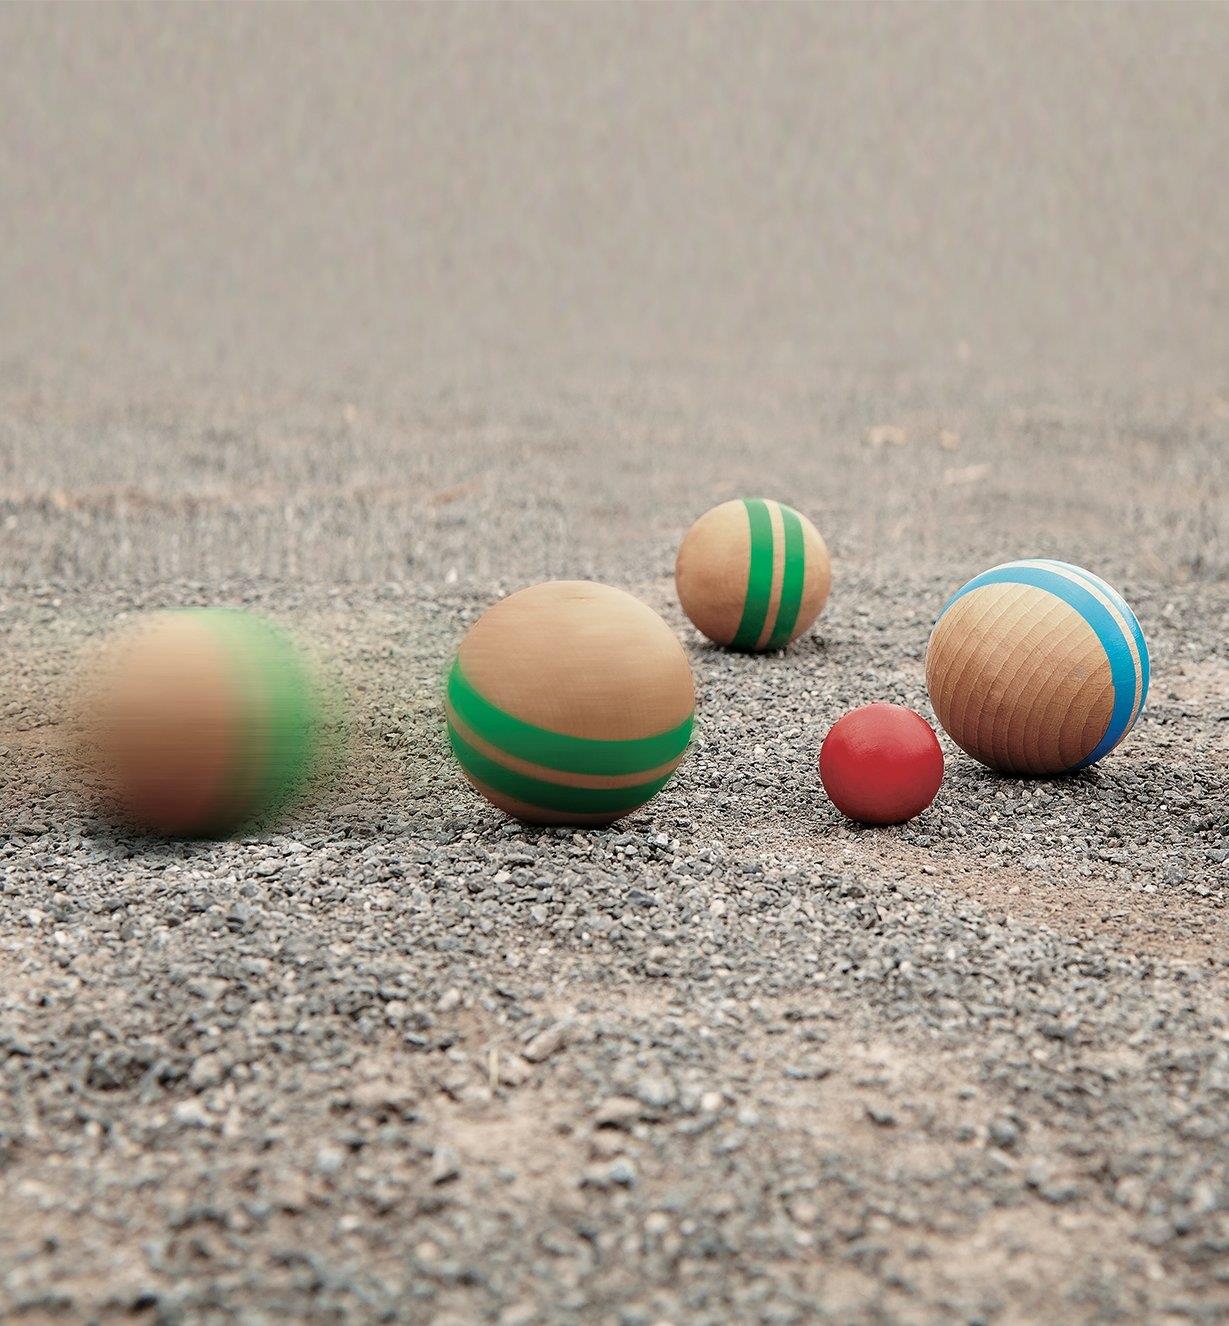 Wooden Pétanque balls rolling on a dirt surface